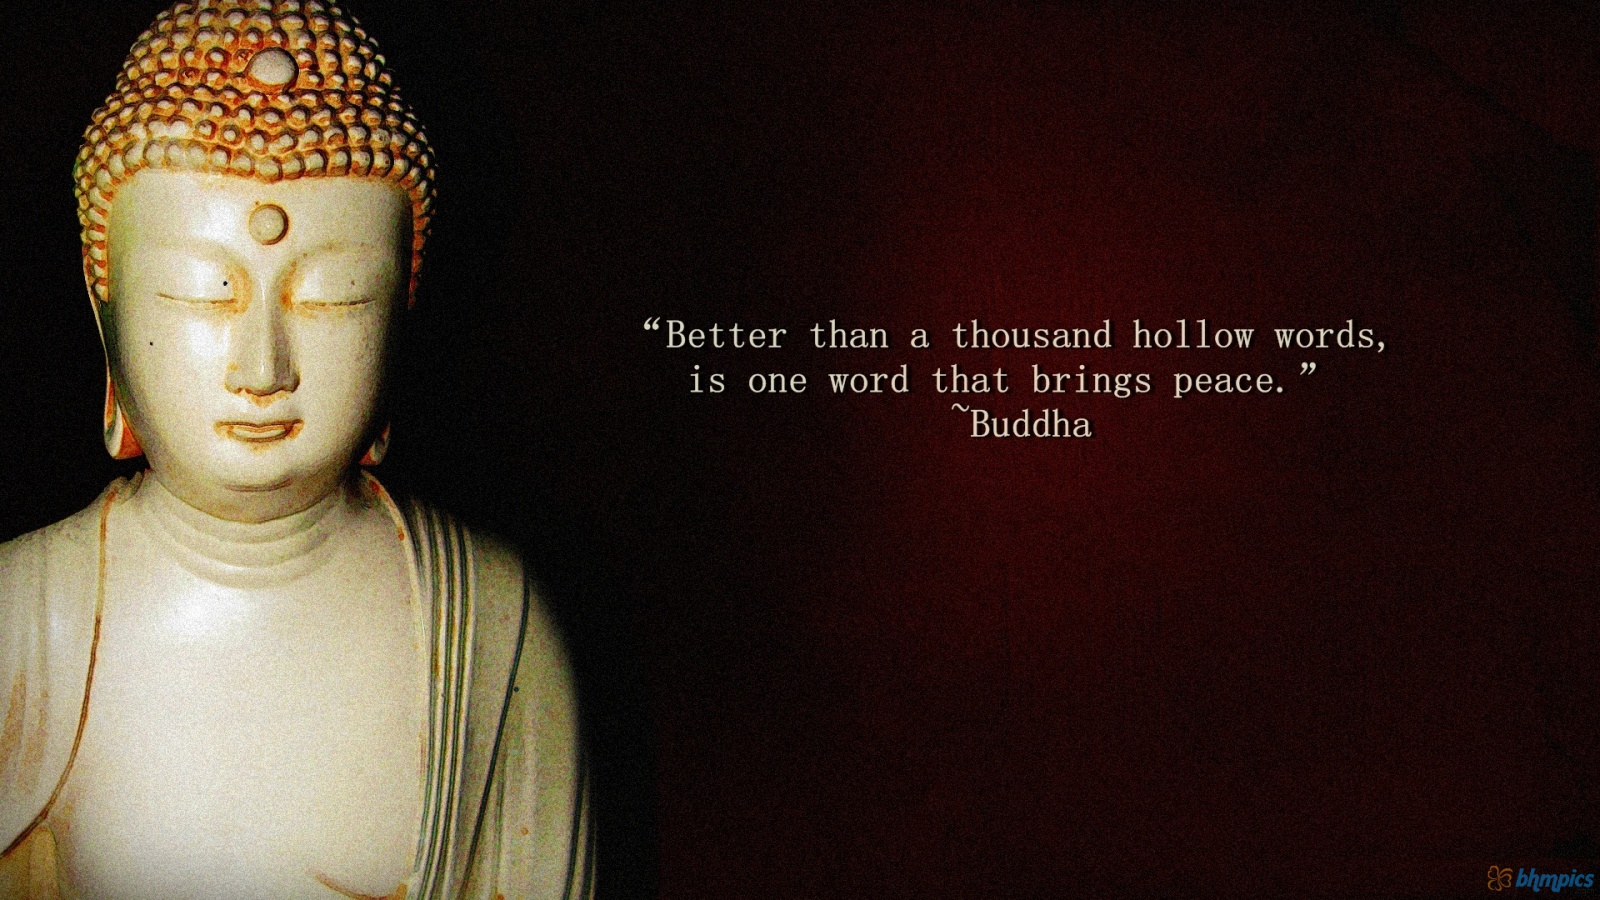 Buddhist Quotes On Nature. QuotesGram